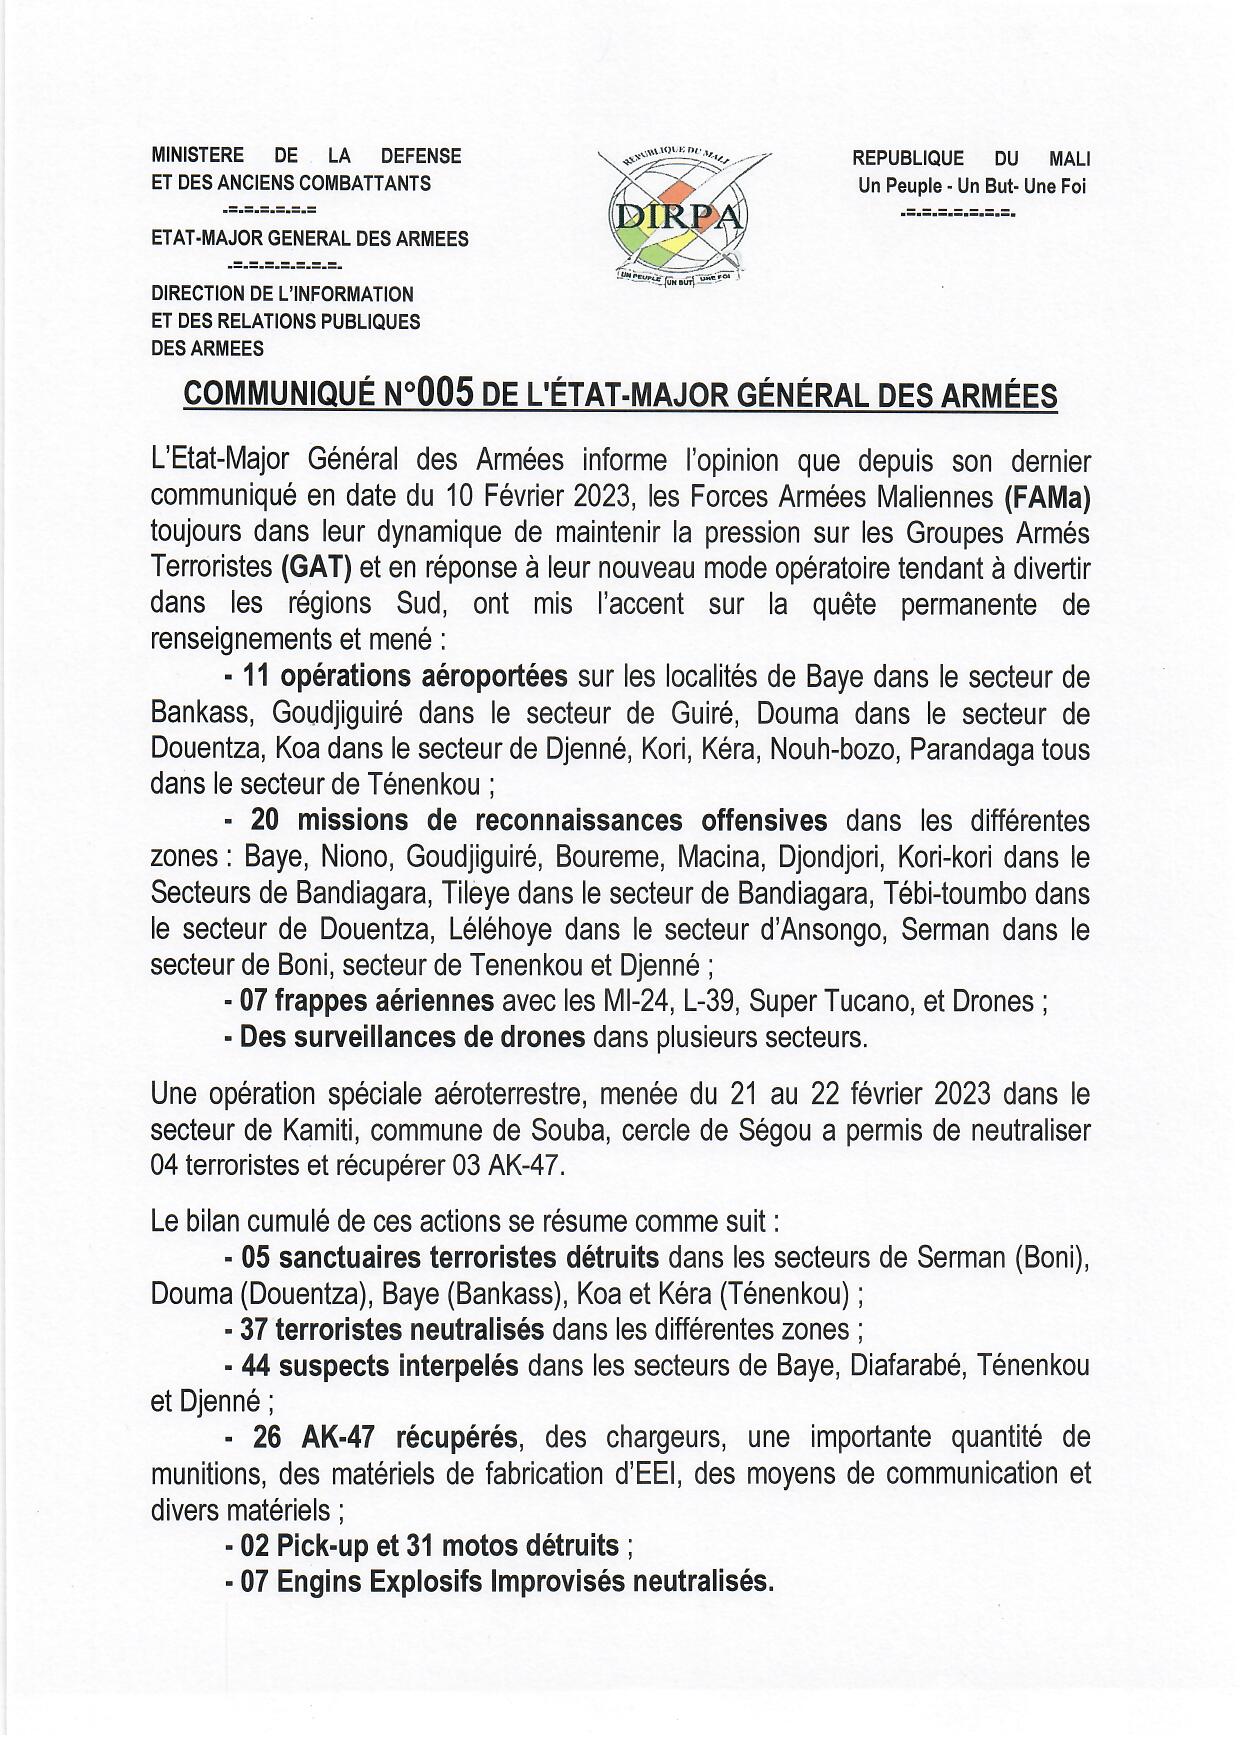  COMMUNIQUE N° 005 DE L'ETAT-MAJOR GENERAL DES ARMEES DU 24 FEVRIER 2023.